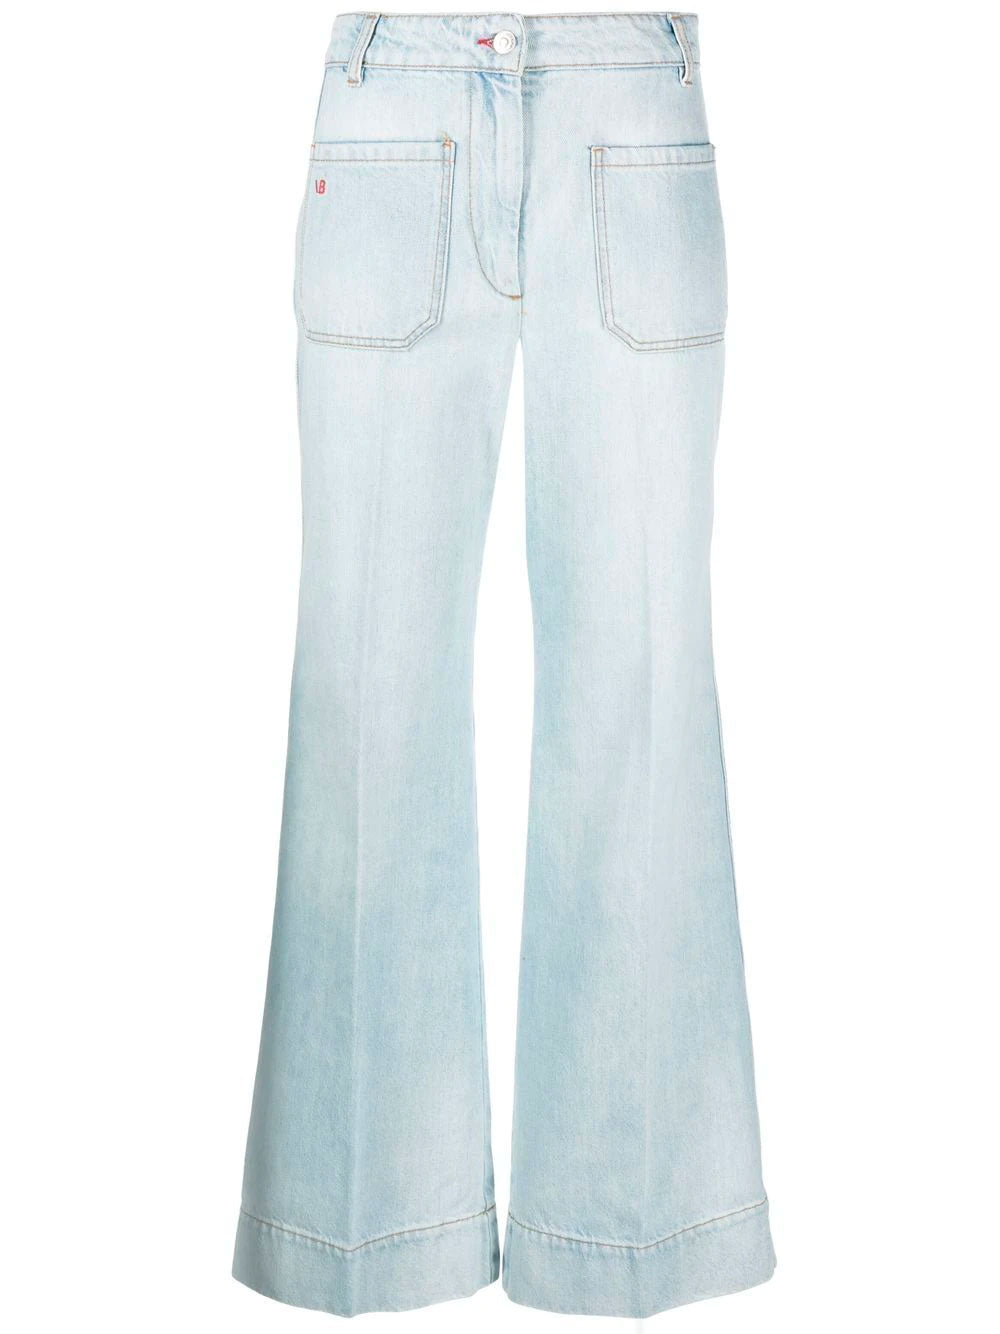 Alina jeans